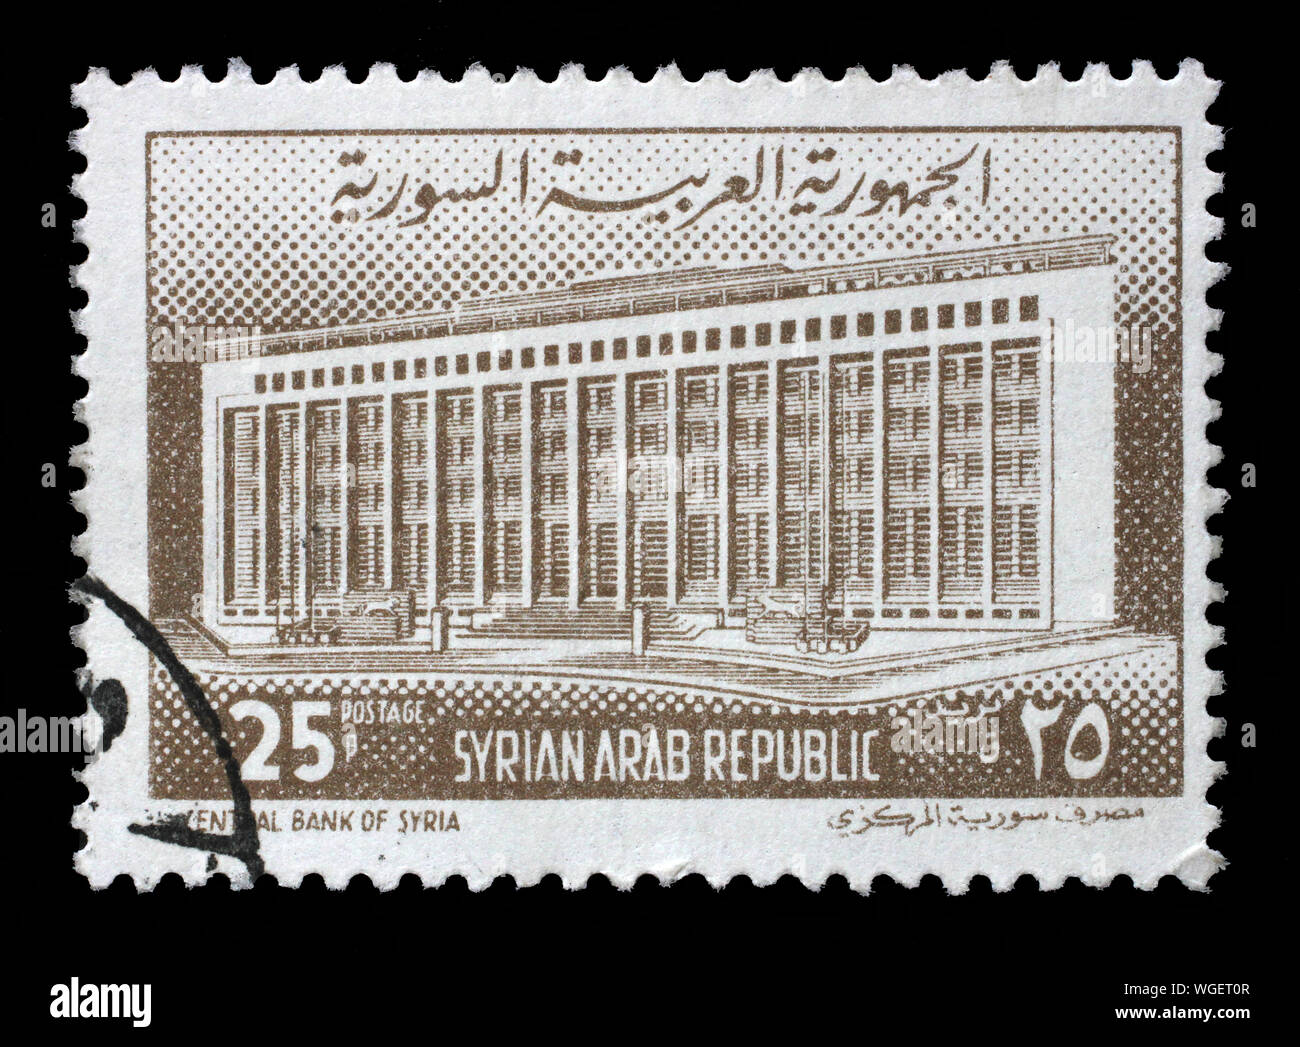 Timbre émis dans la Syrie montre Banque centrale de Syrie, vers 1963 Banque D'Images